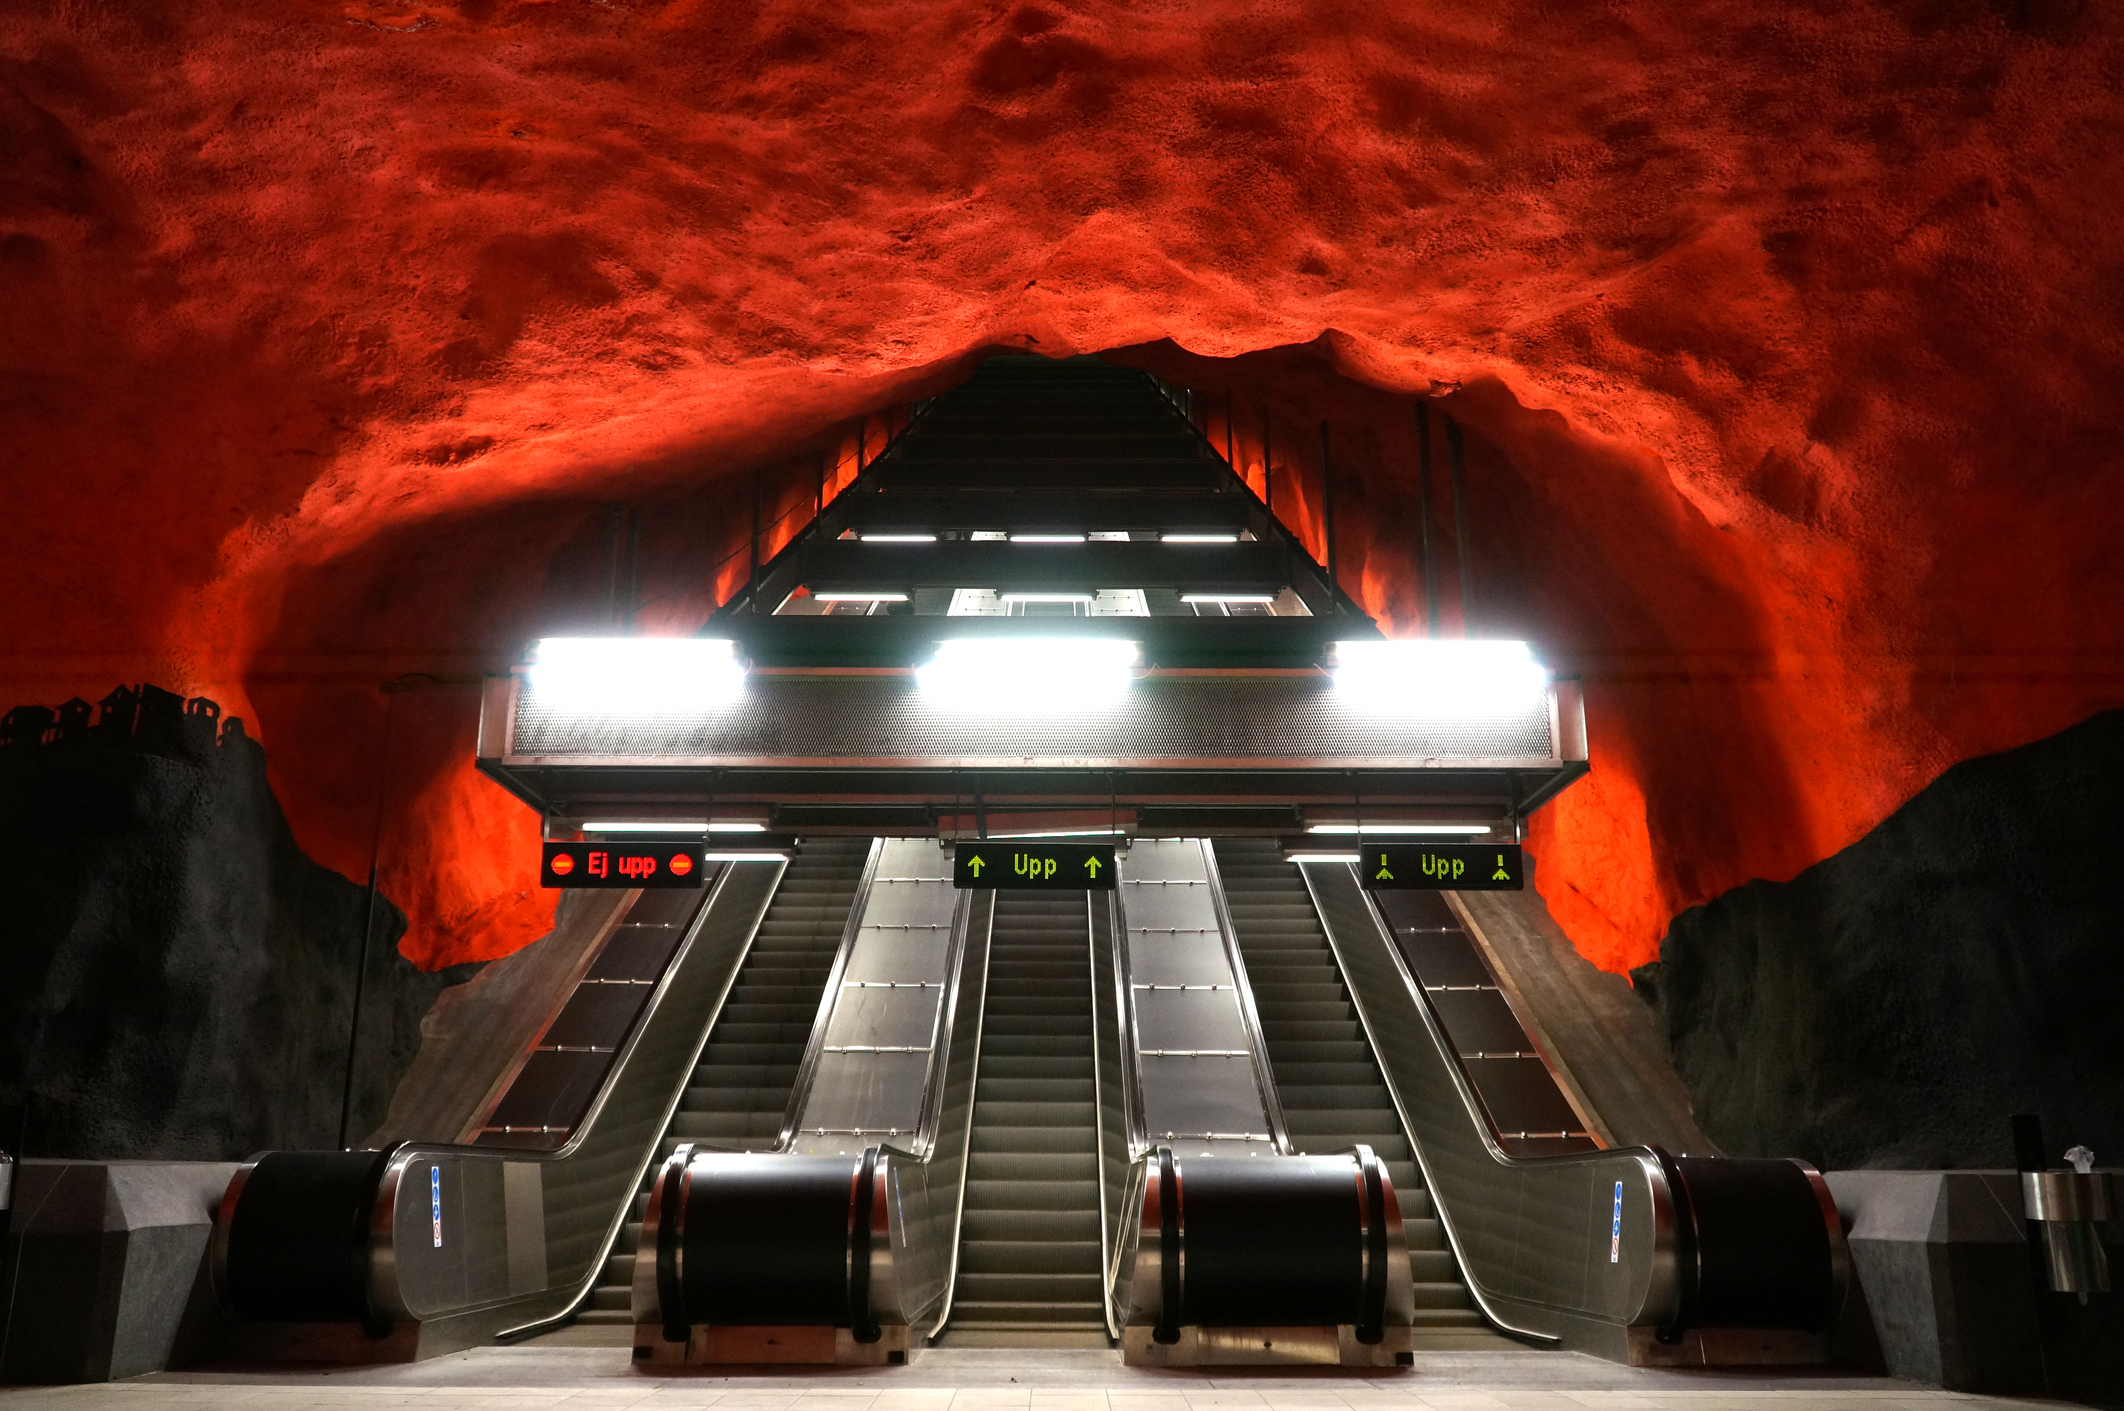 Метростанция Солна – Стокхолм, Швеция<br />
Метростанция Солна се намира на 5 км. от центъра на Стокхолм и е свързана с един от търговските центрове на Стокхолм. Заради близостта си с търговския център, а с това и много ресторанти, и магазини, метростанция Солна е сред най-натоварените в Стокхолм. Таванът й е в червено, а по стените можете да разгледате различни произведения на изкуството.